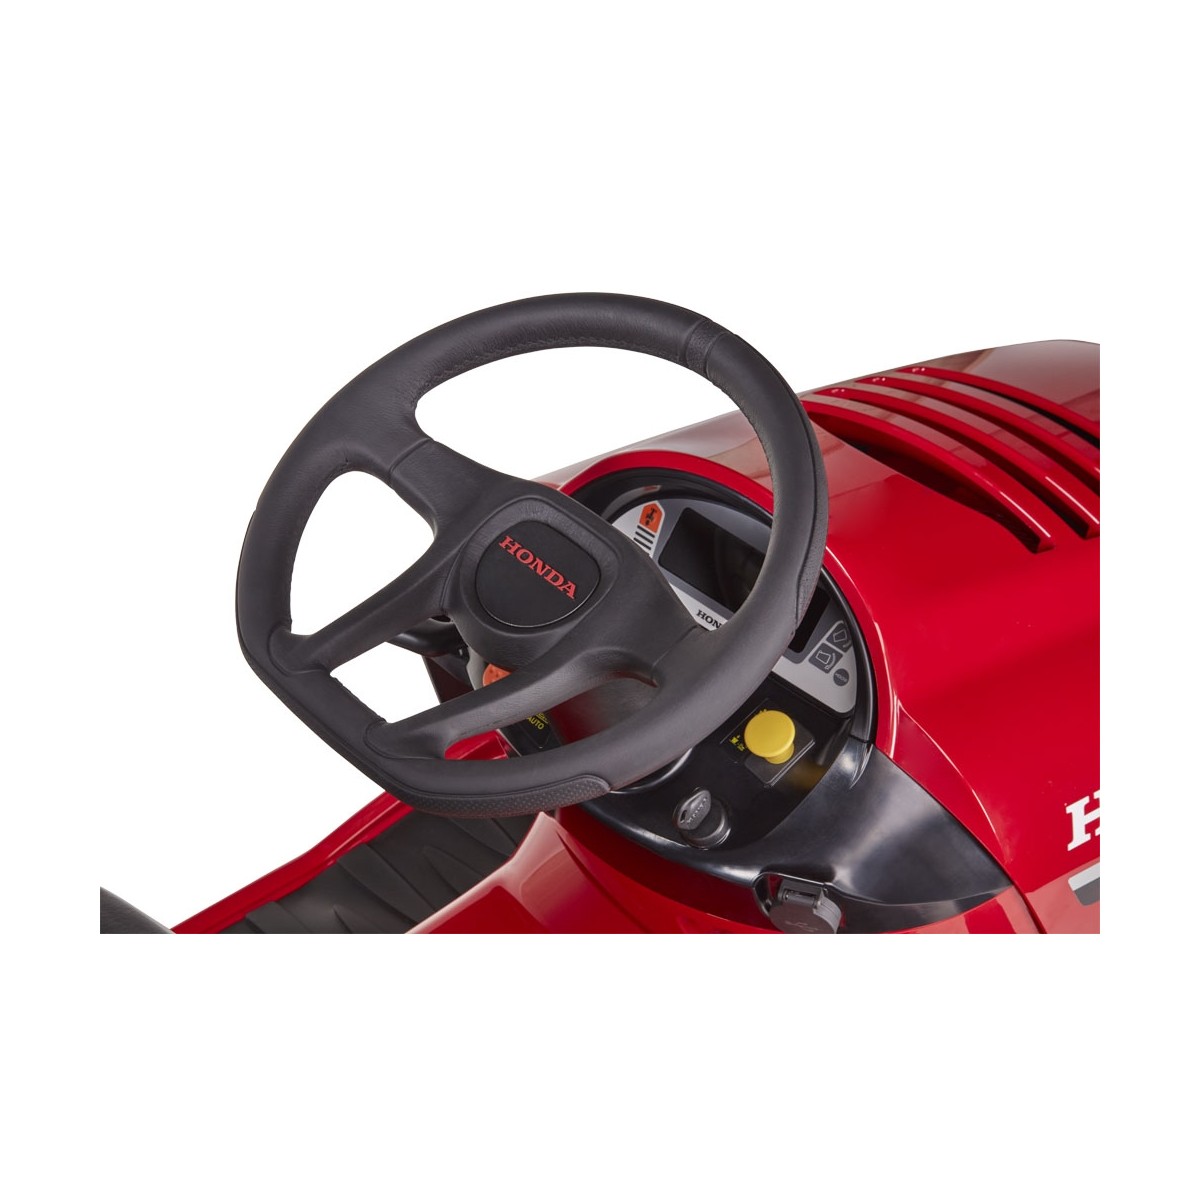 Rasentraktor Honda HF2417 HME inkl. Mulchsystem, Fangkorb, Rasentraktoren, Rasen